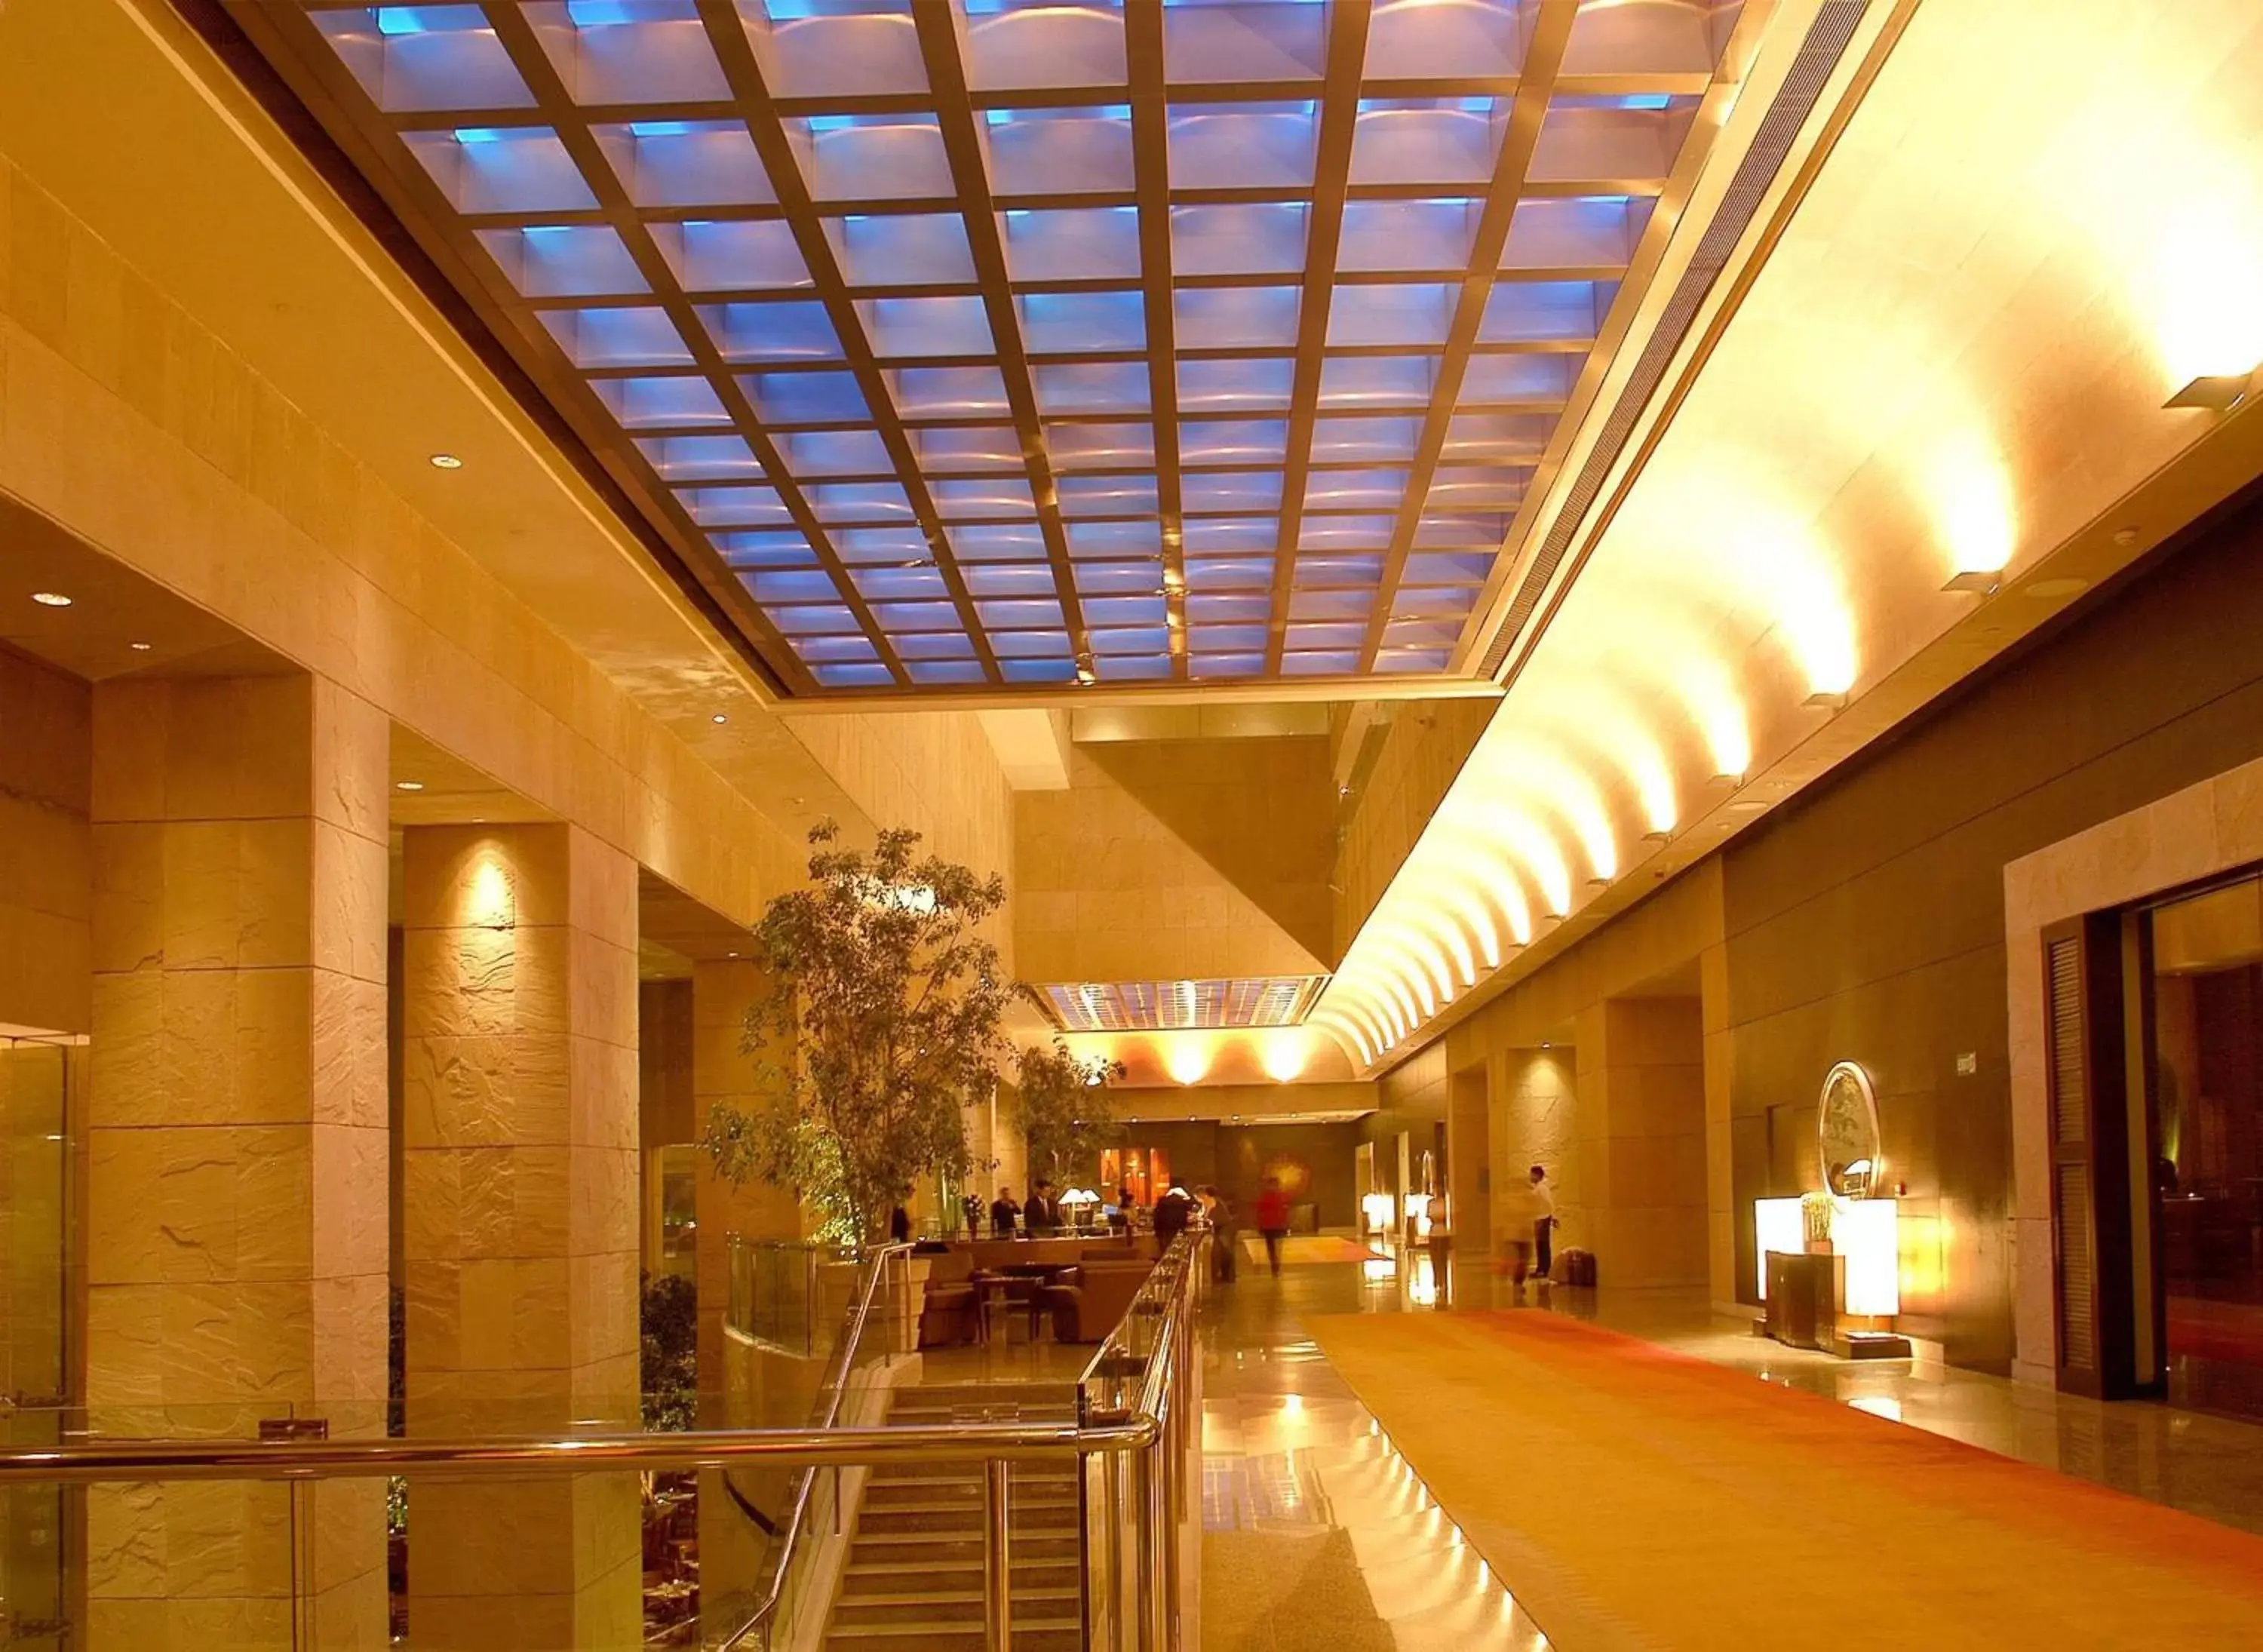 Lobby or reception, Lobby/Reception in Hyatt Regency Kolkata